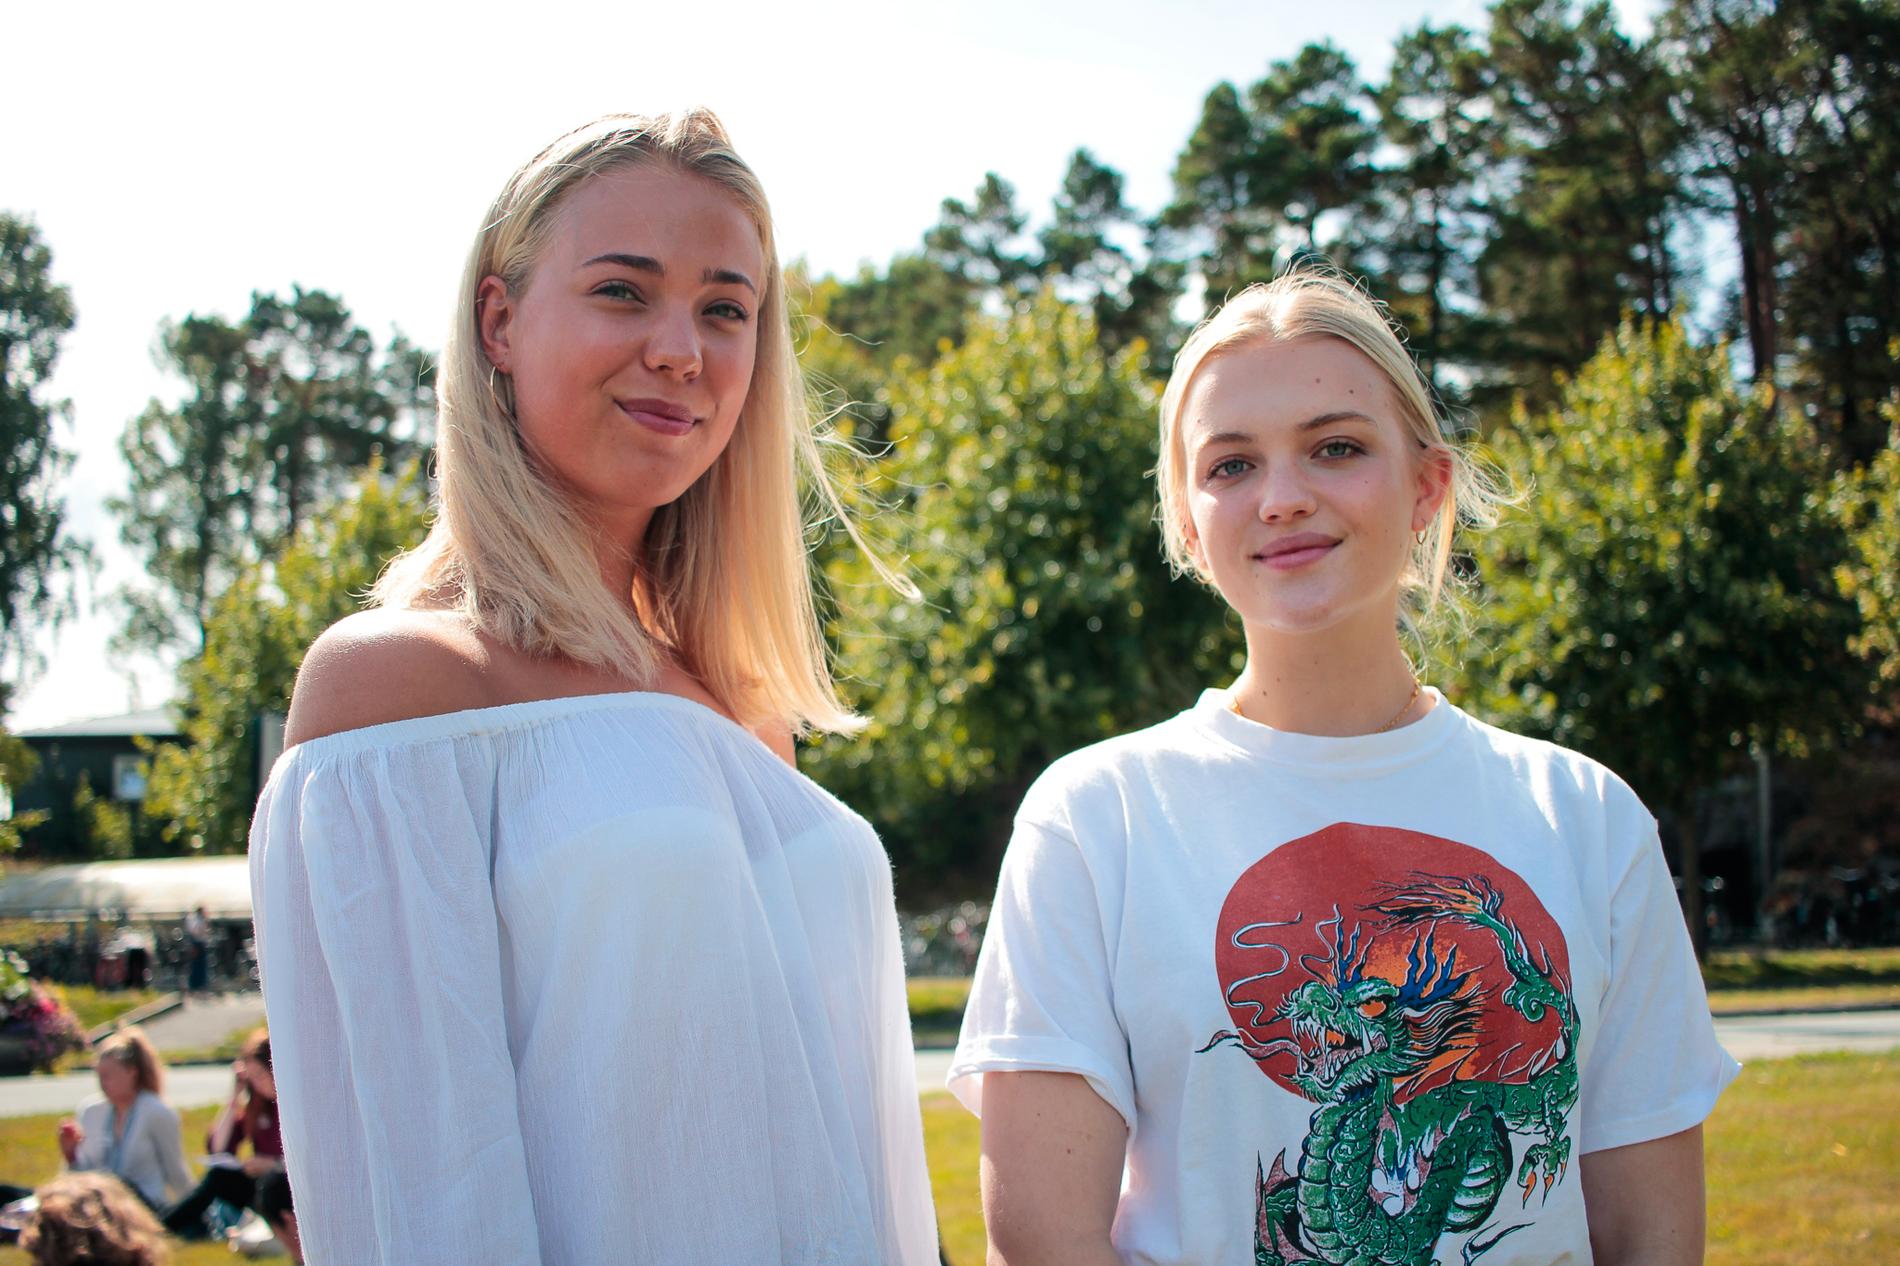 Jentene har et godt førsteinntrykk av Kristiansand, og ser fram til å bli bedre kjent med byen utover semesteret.